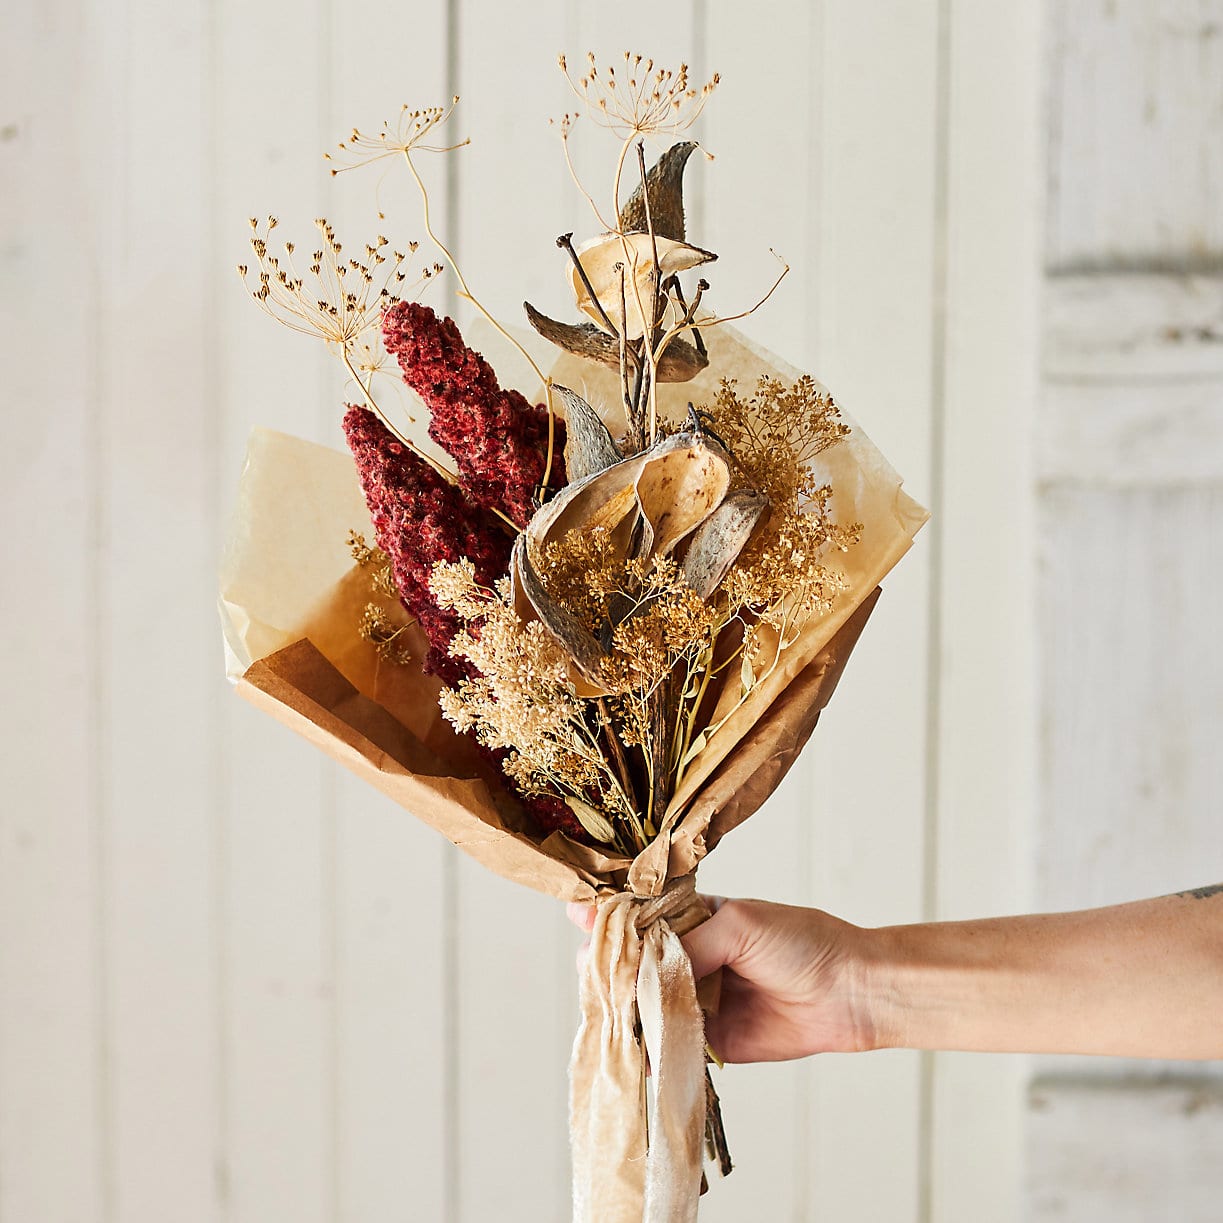 8 Best Valentine's Day Dried Flower Arrangements 2023